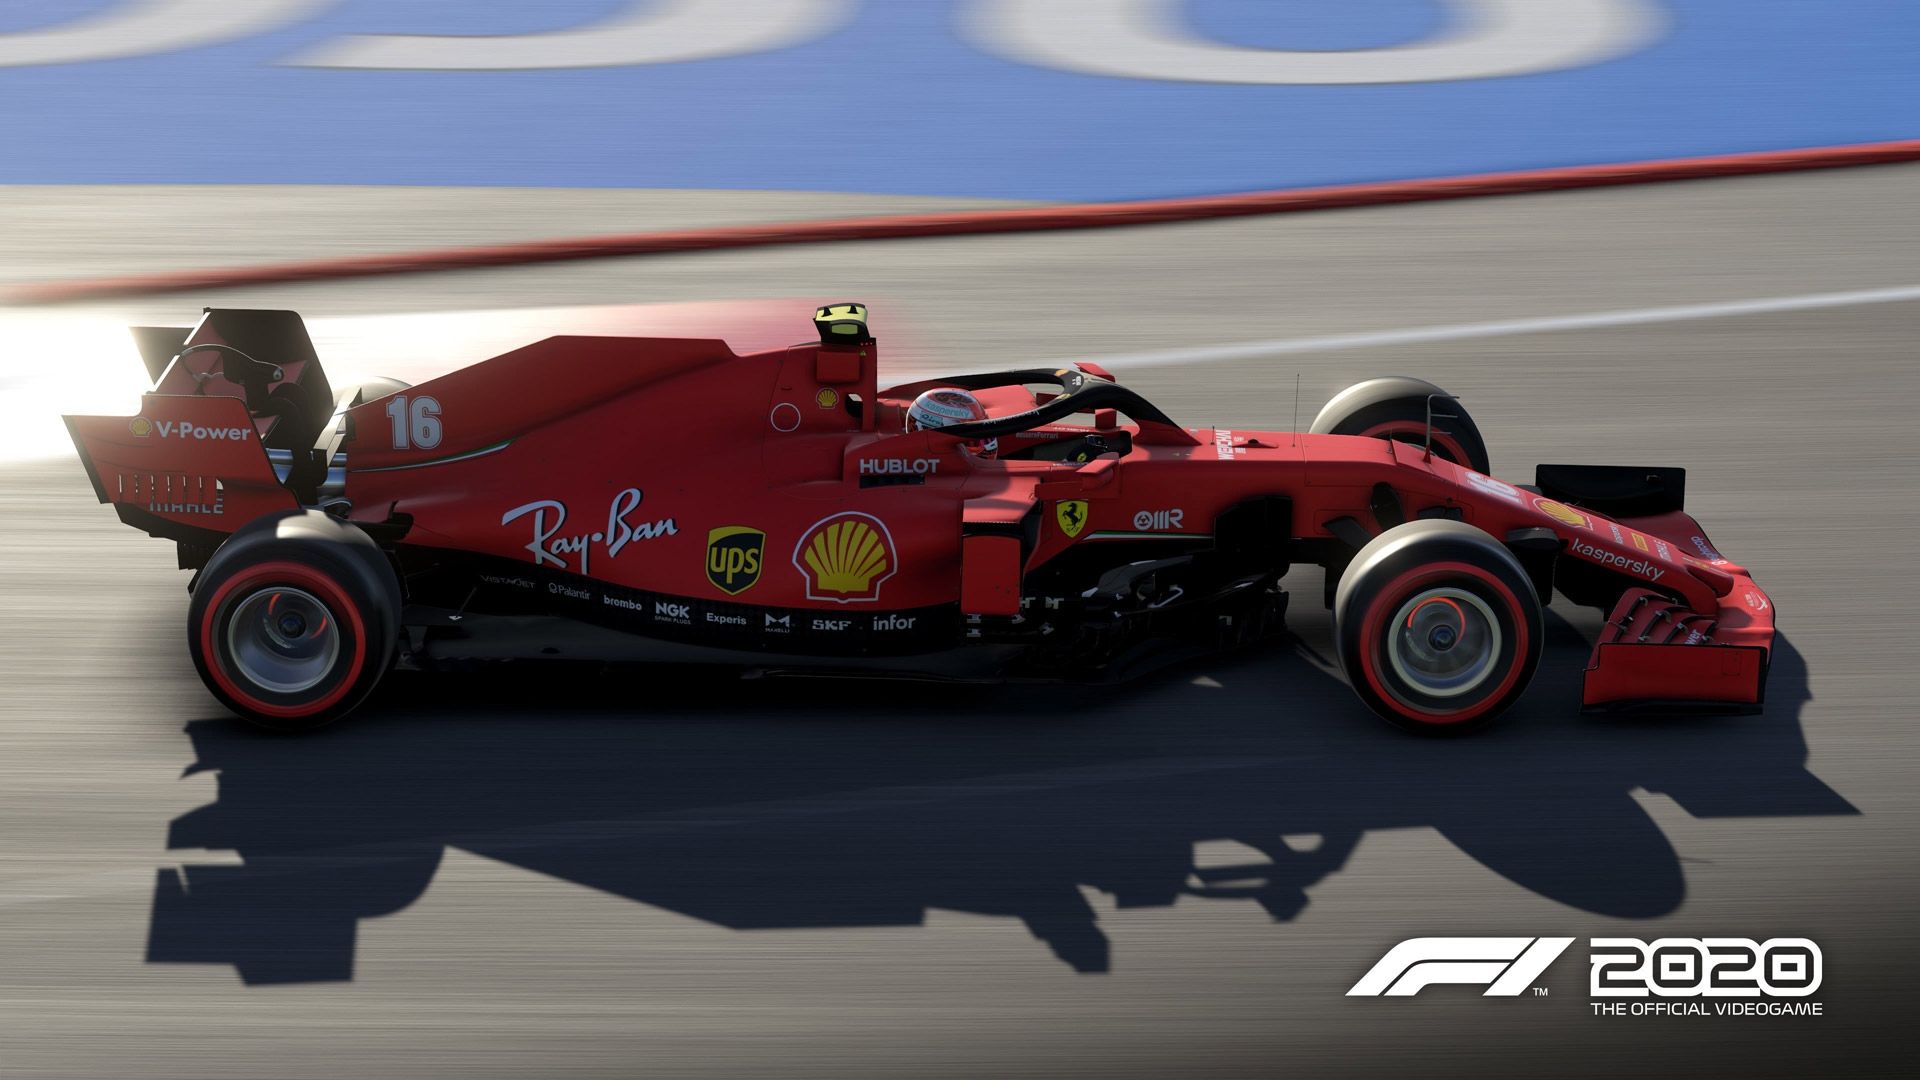 F1 2020 Update 1.17